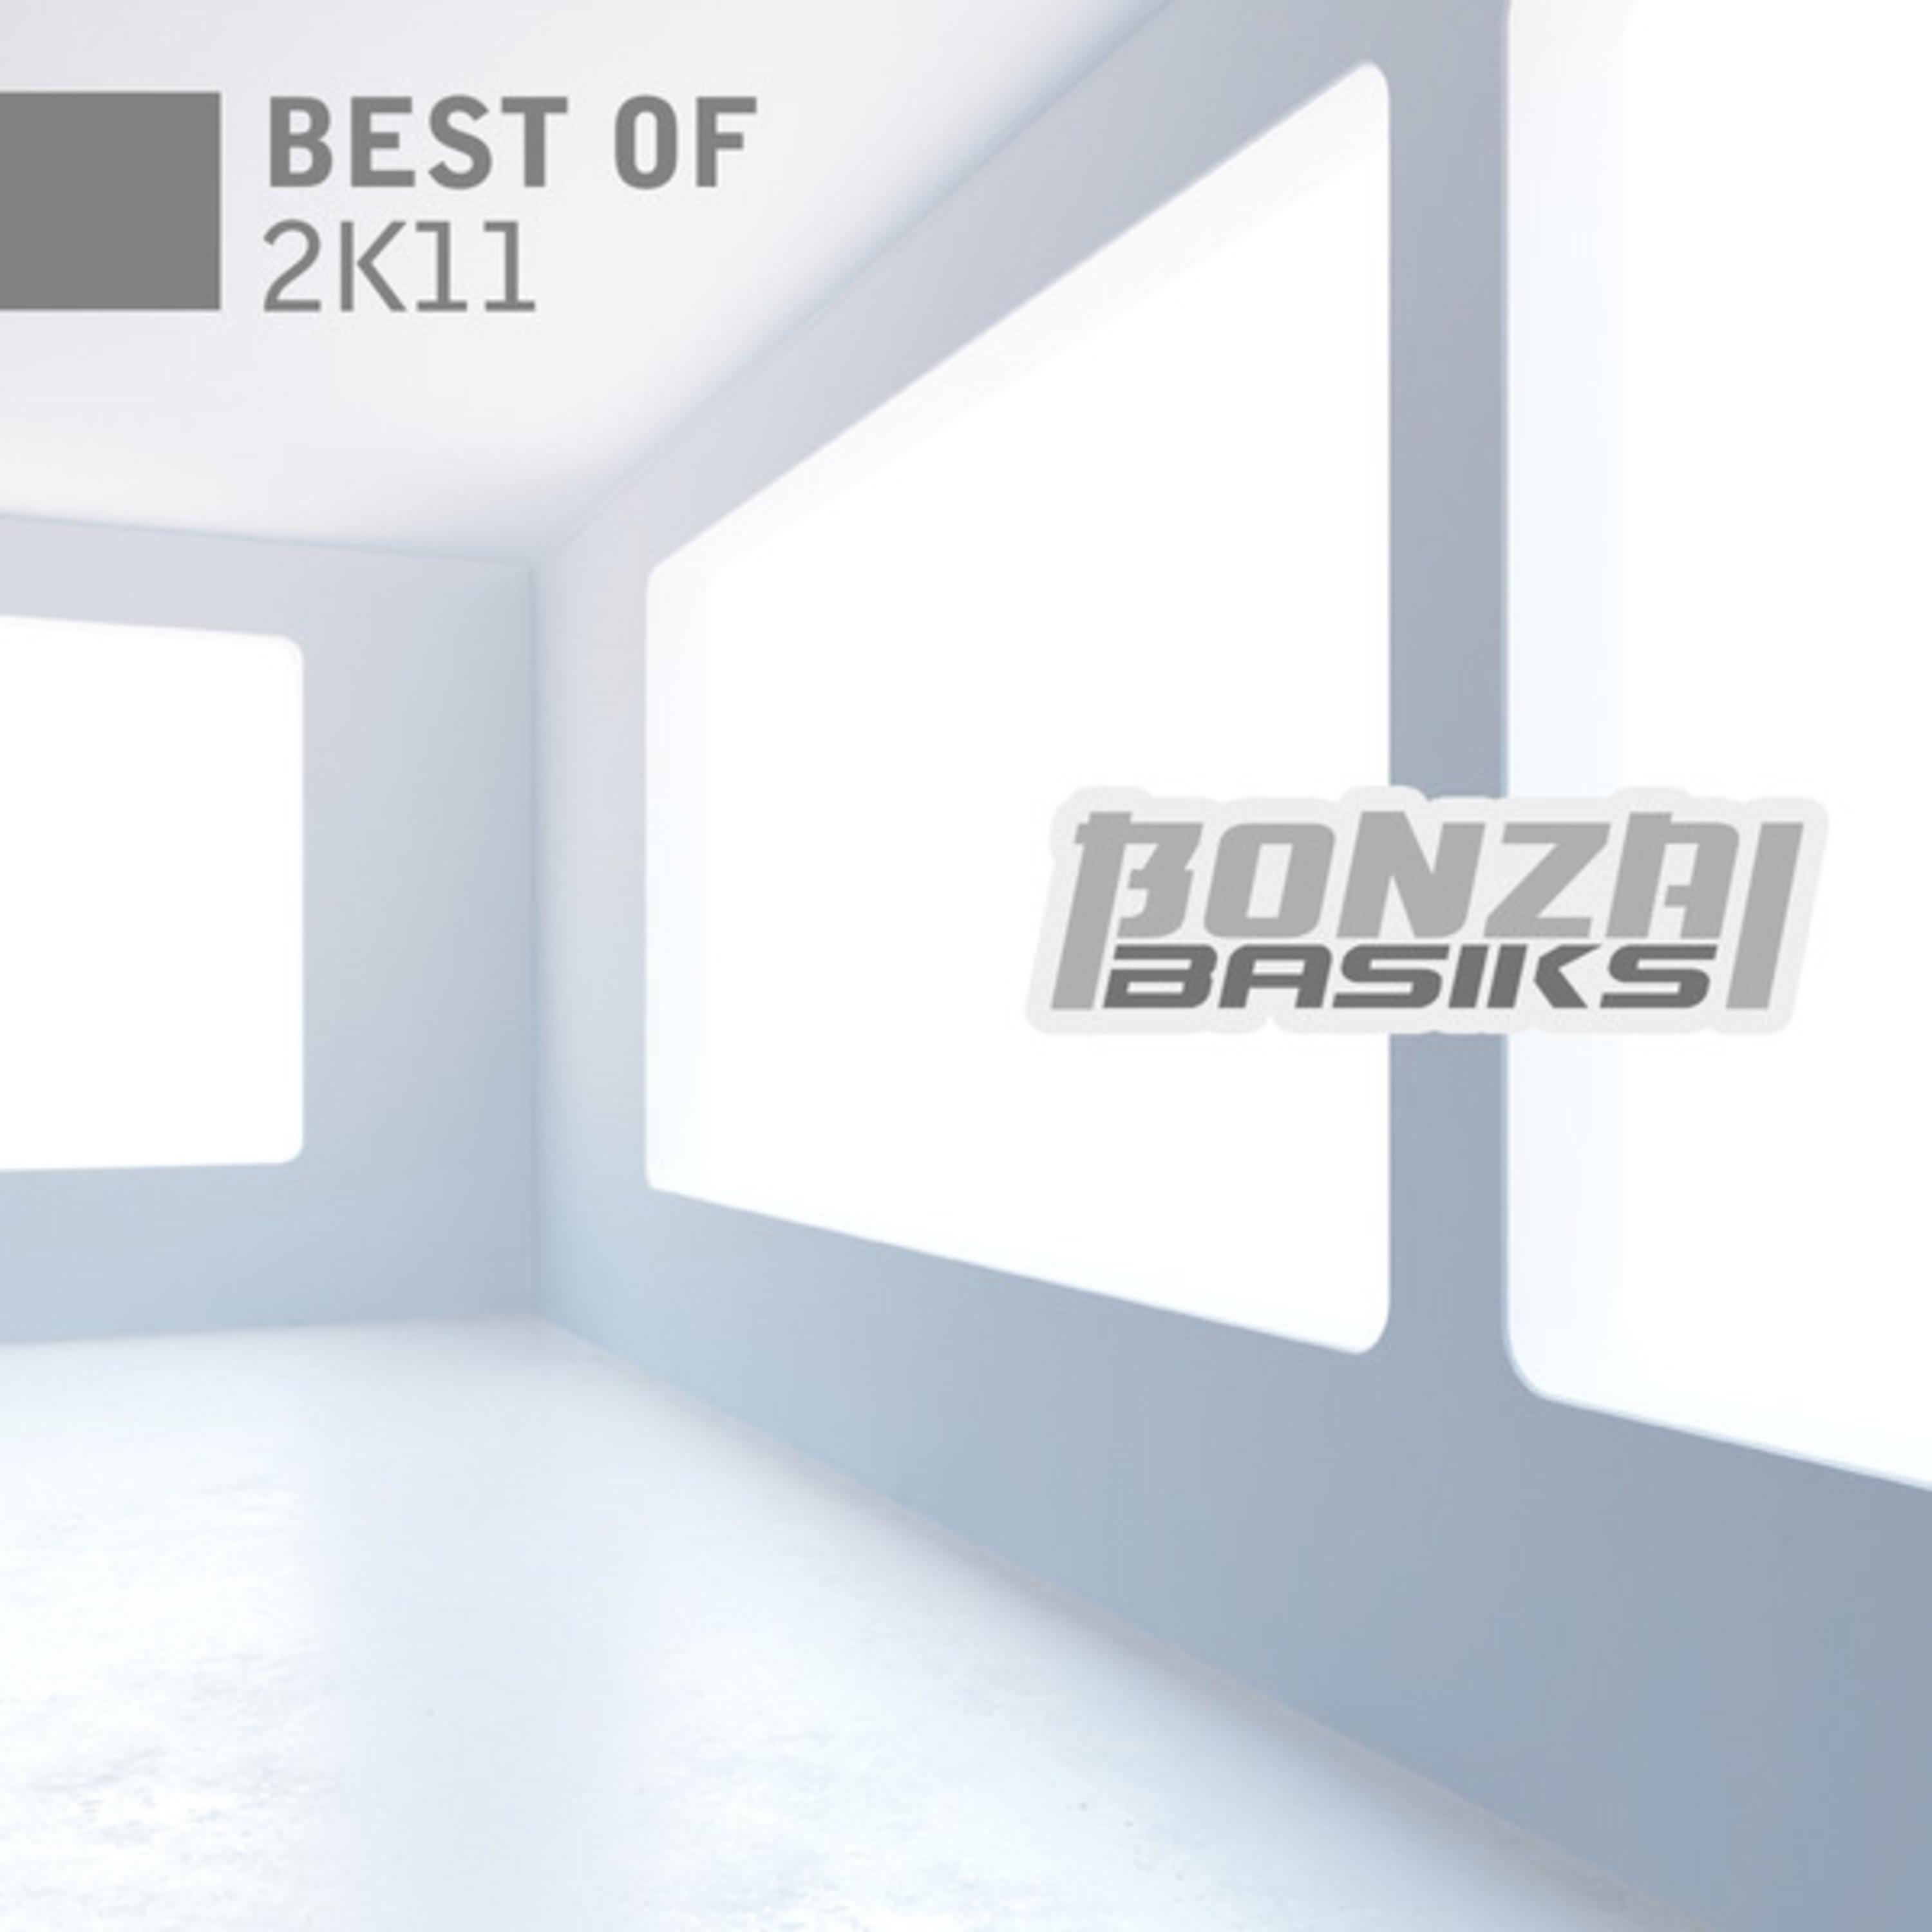 Bonzai Basiks - Best of 2k11